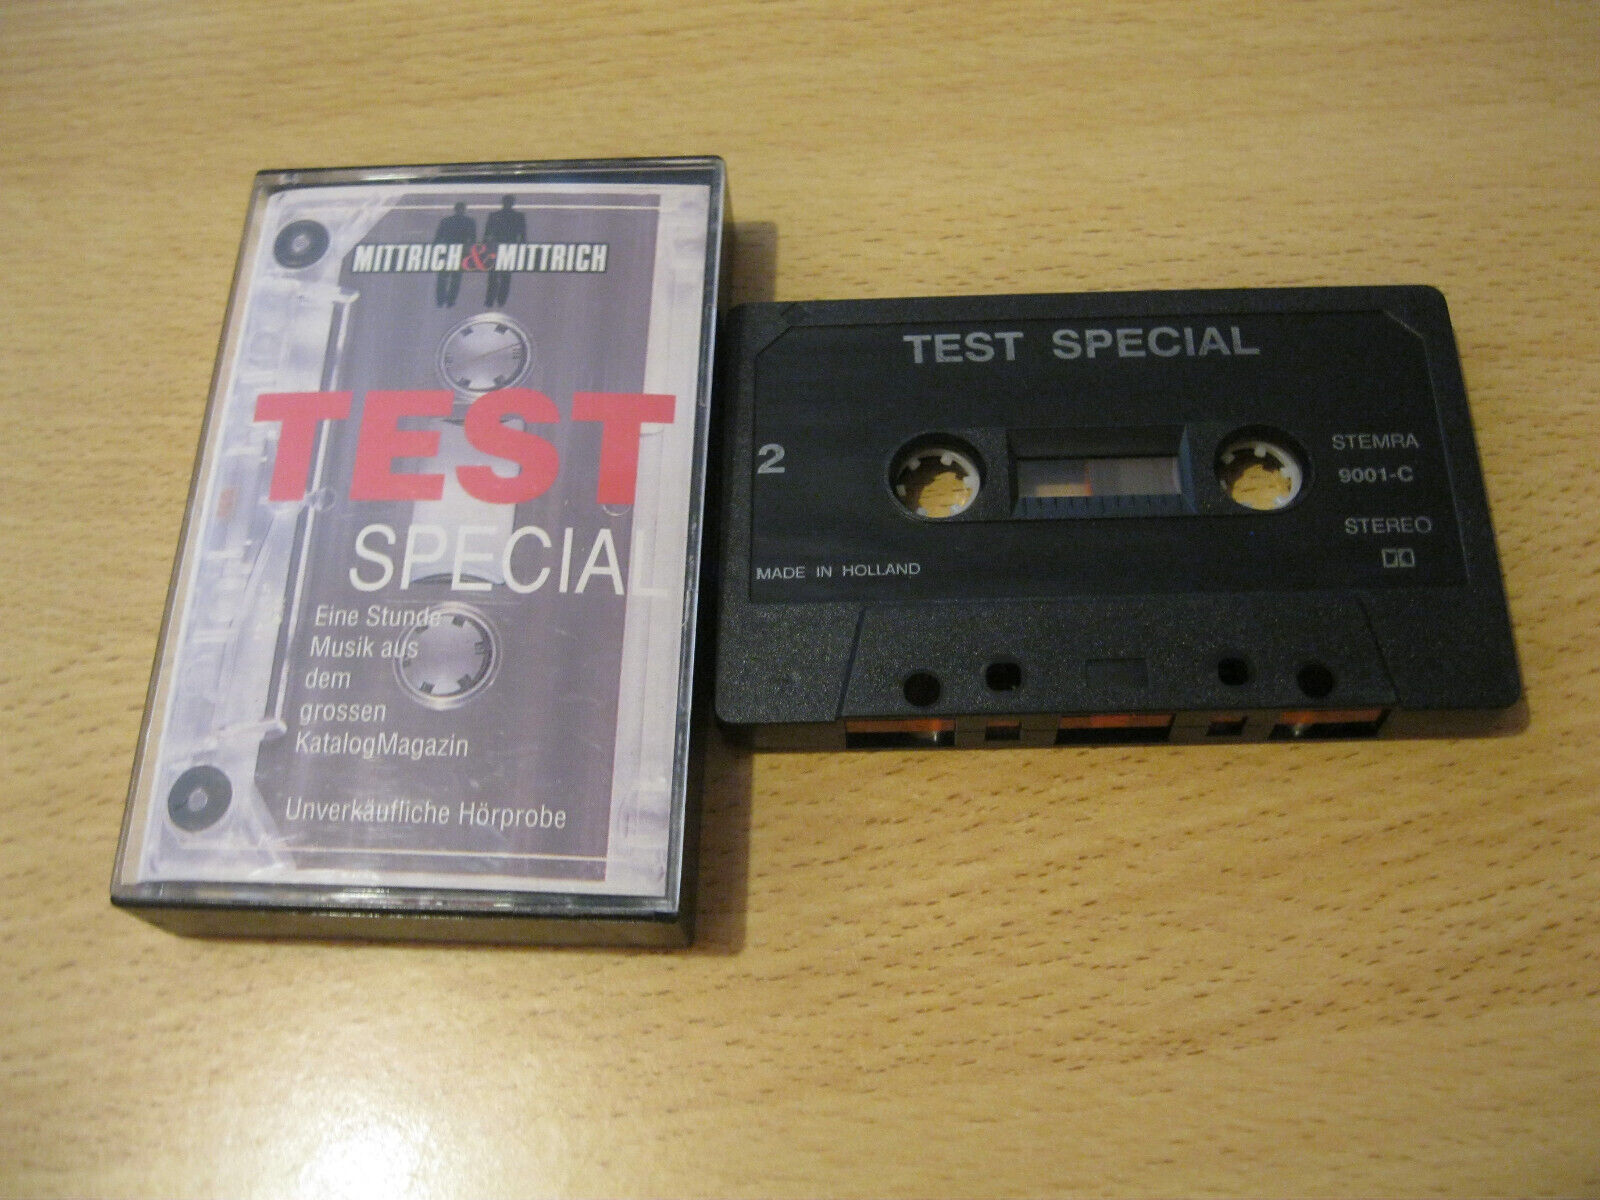 MC Mittrich & Mittrich Test Special Musik Katalog Magazin Tape 9001-c  Holland